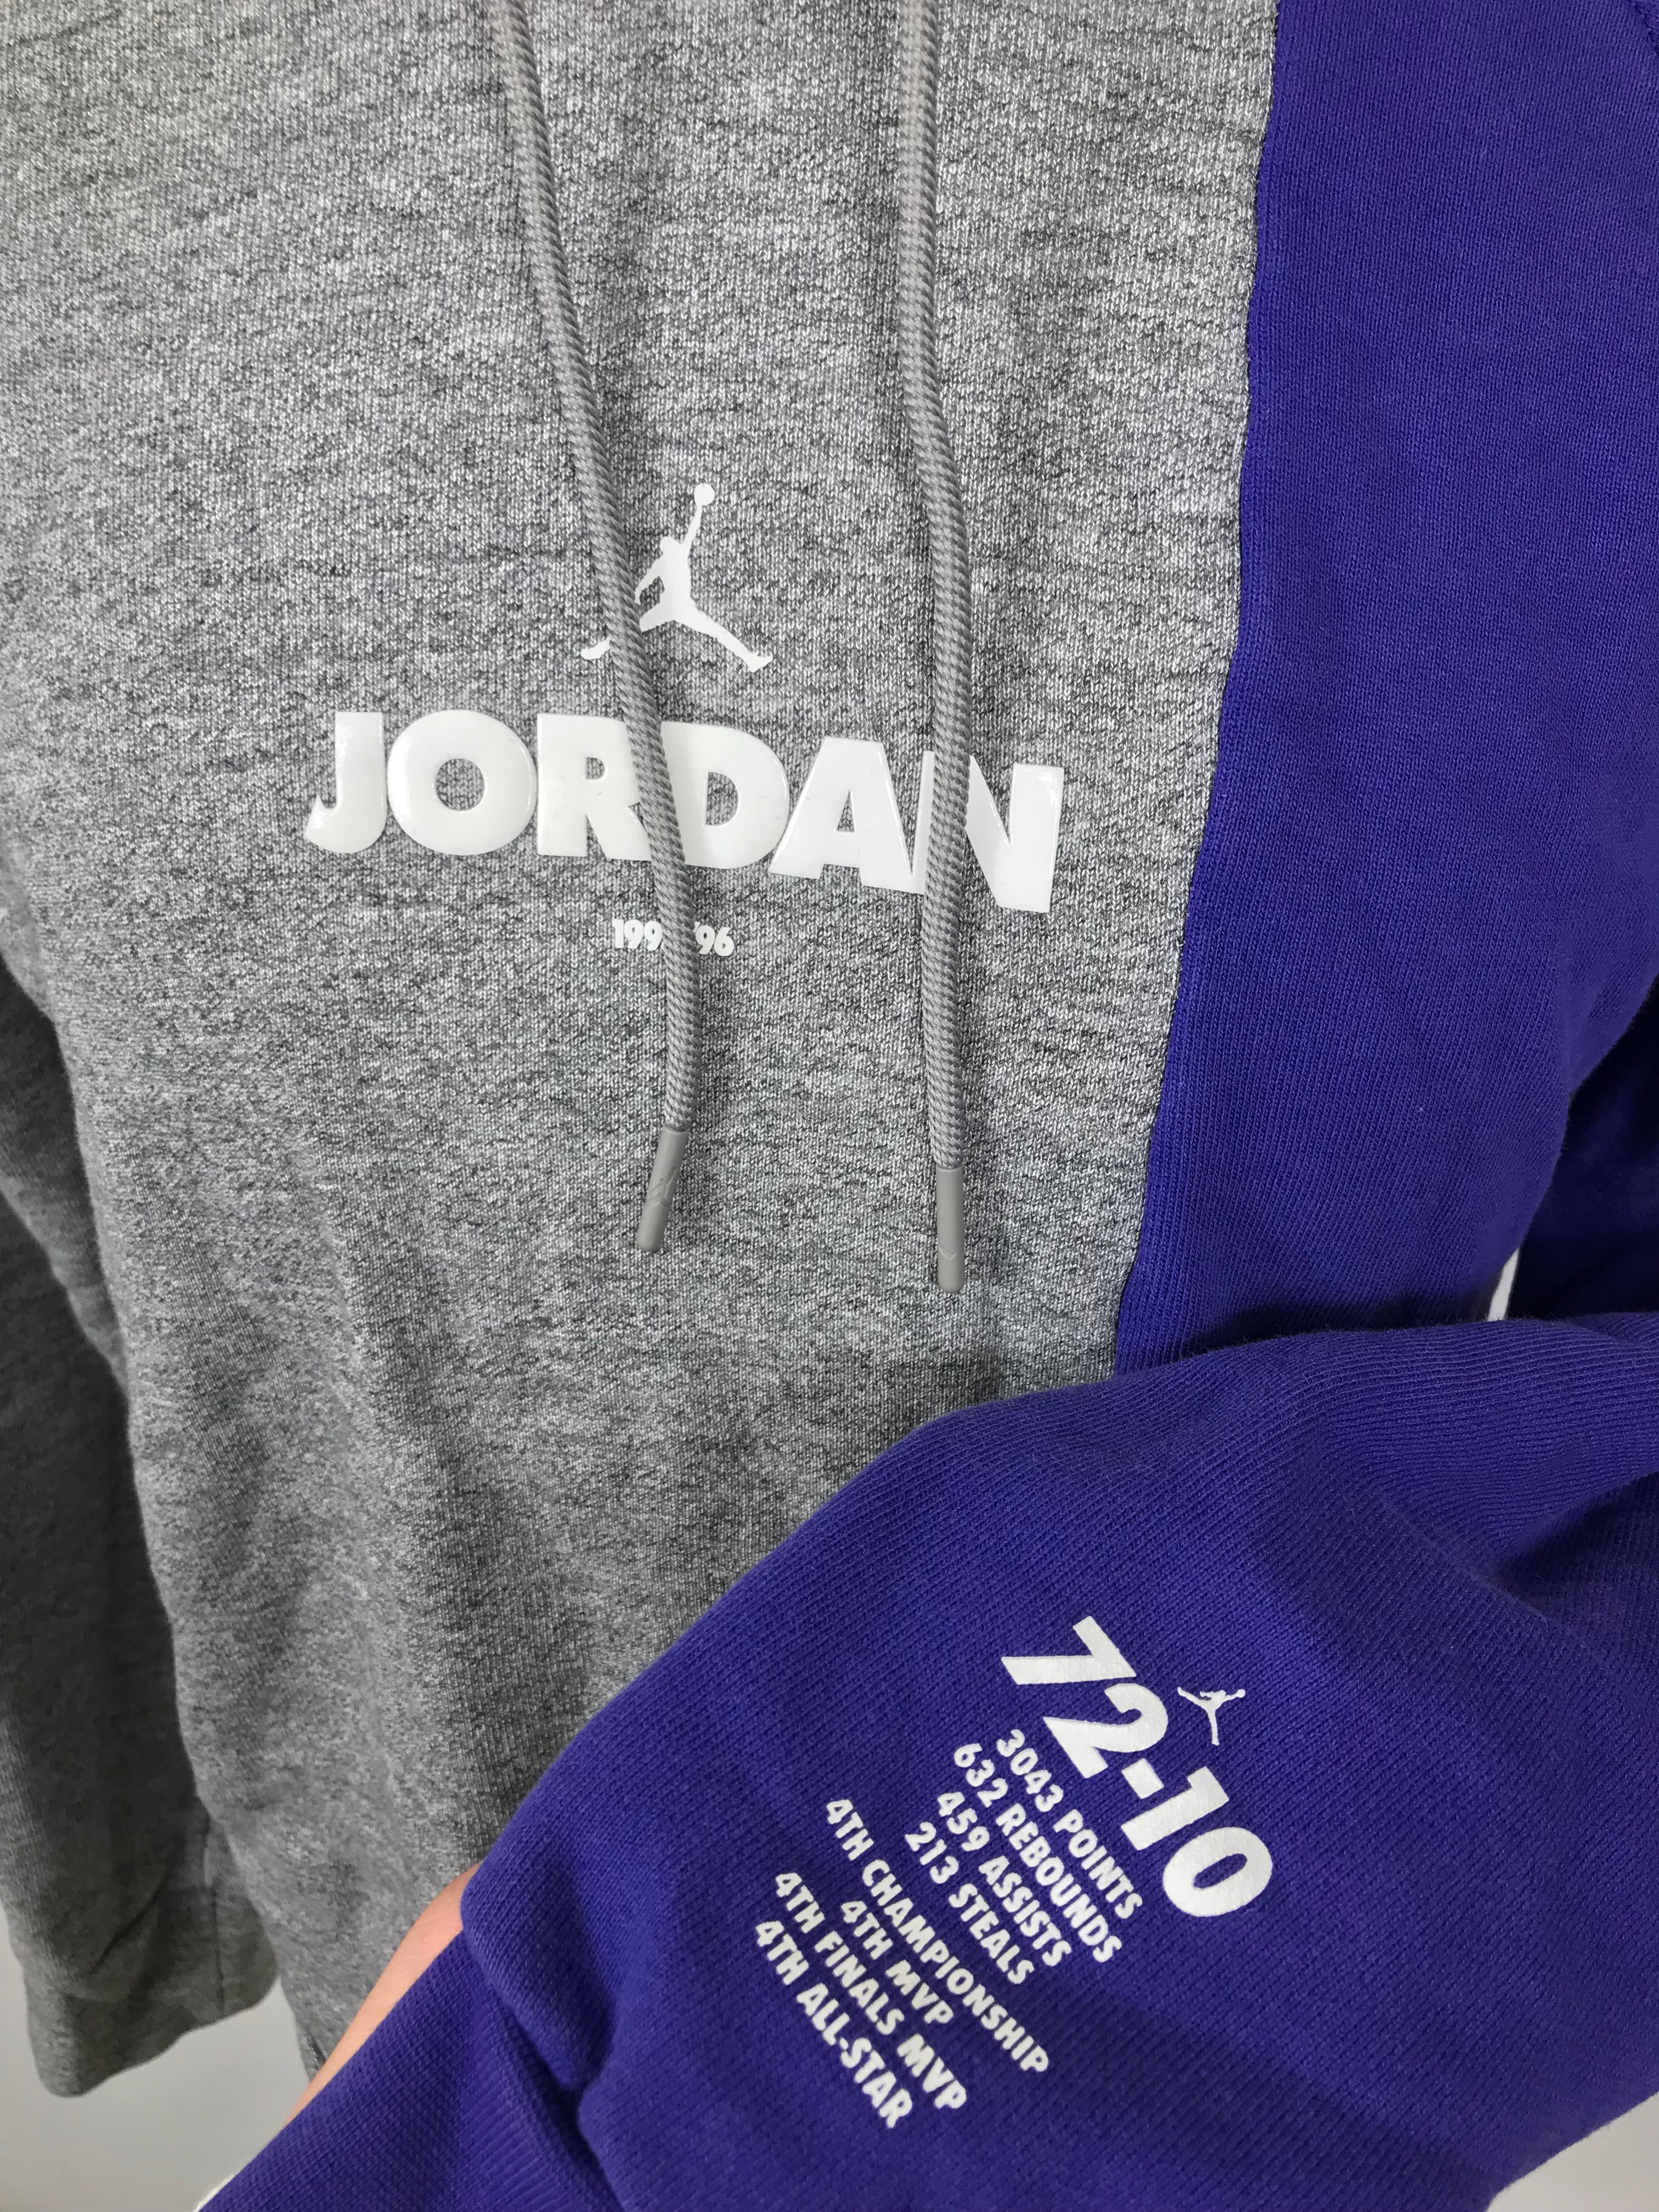 Jordan Gray & Purple Hoodie Women's Size M